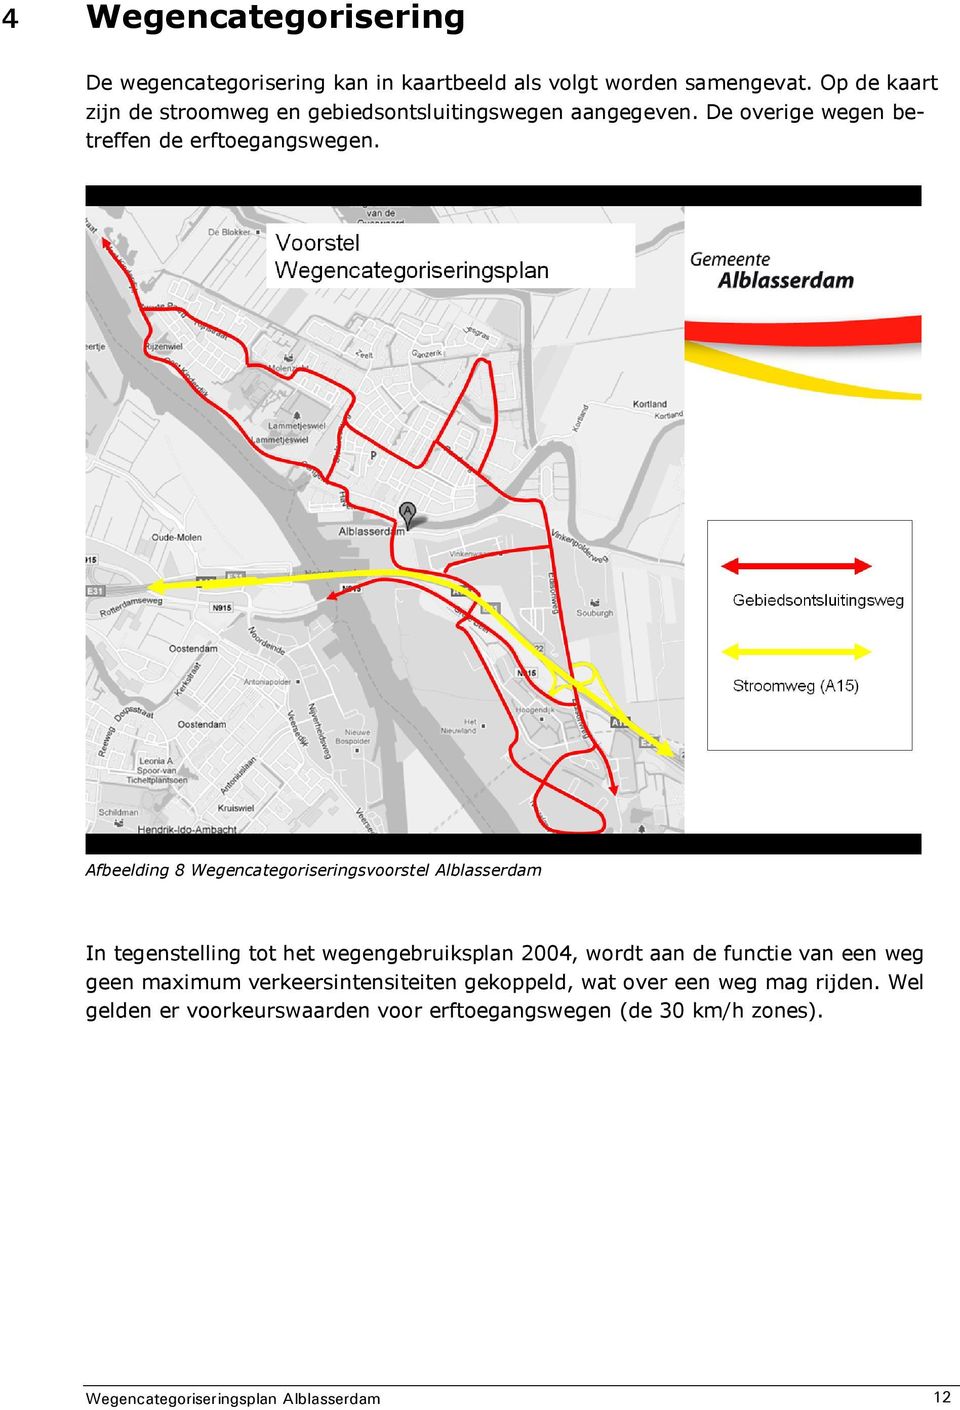 Afbeelding 8 Wegencategoriseringsvoorstel Alblasserdam In tegenstelling tot het wegengebruiksplan 2004, wordt aan de functie van een